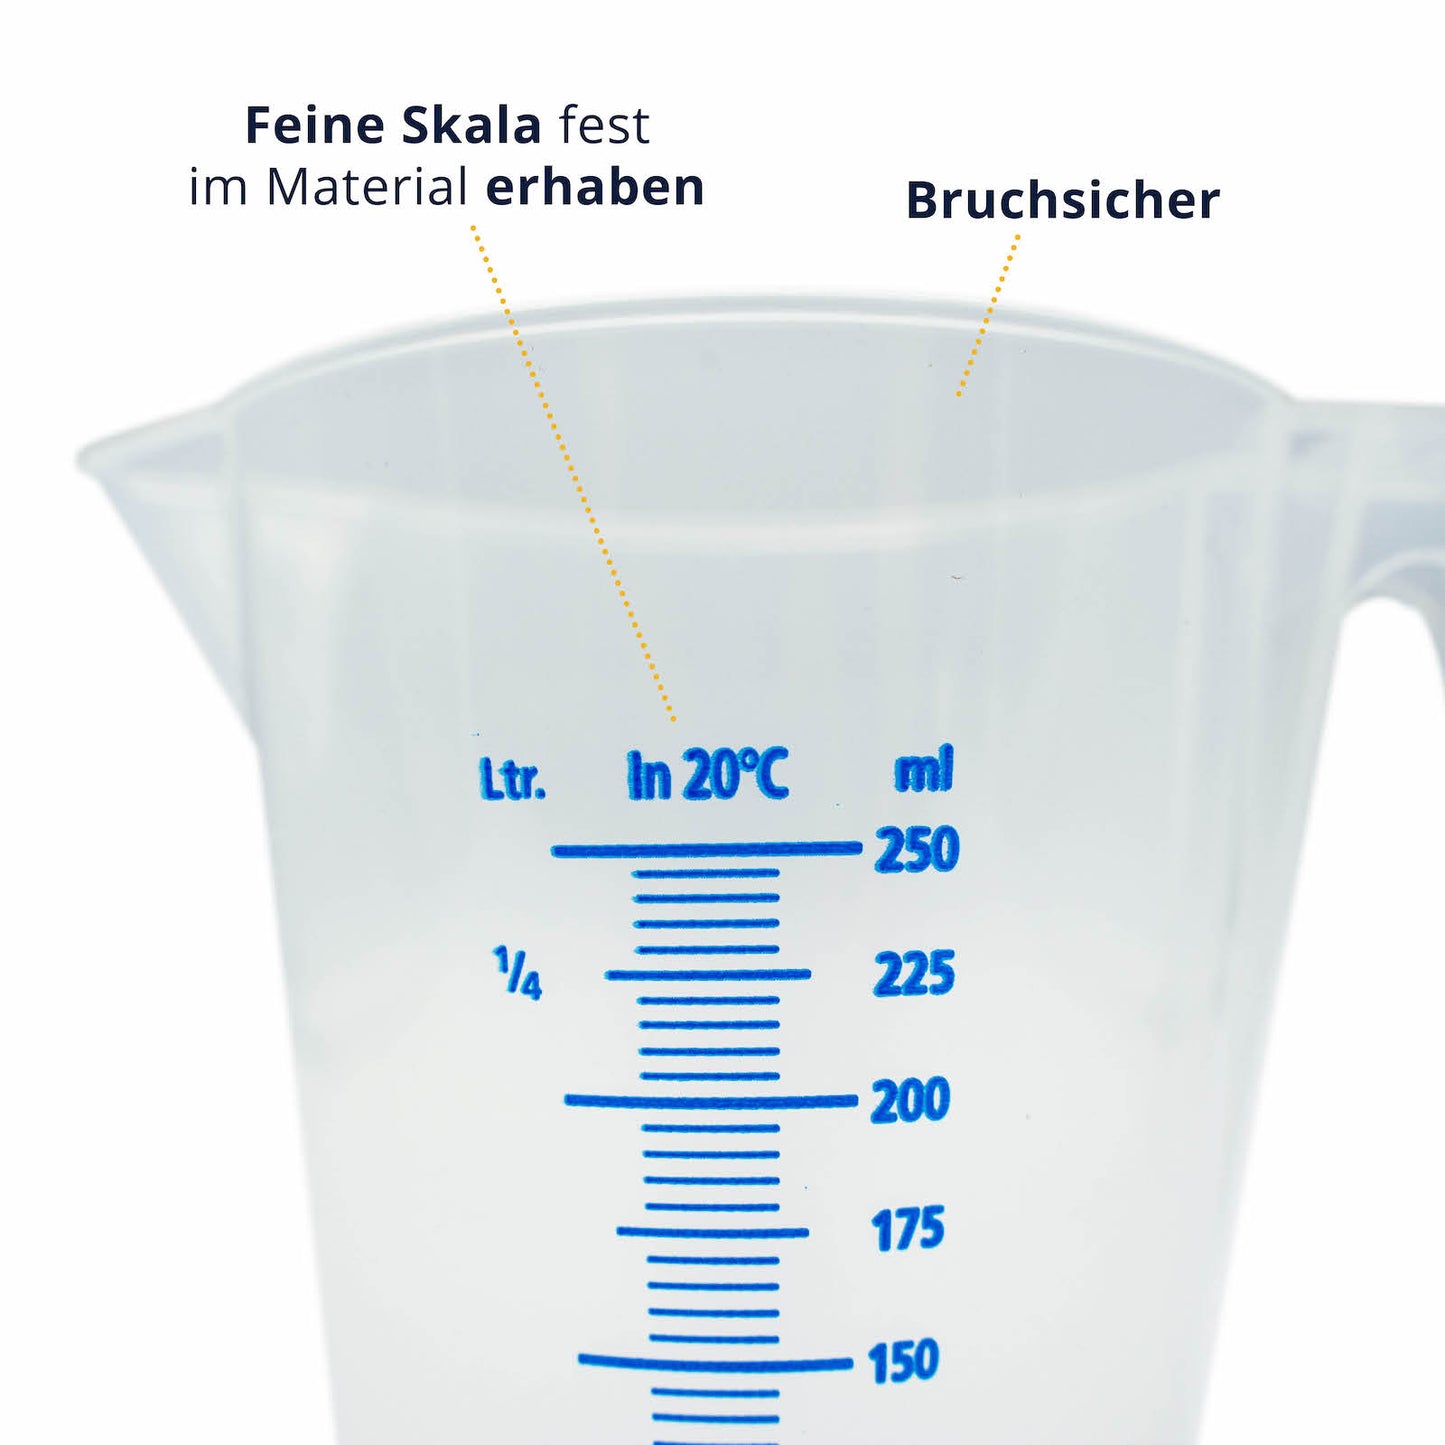 Perfekte Ablesegenauigkeit=>Die präzise und leicht lesbare Skala erlaubt eine exakte Dosierung aller Flüssigkeiten im Millimeterbereich.